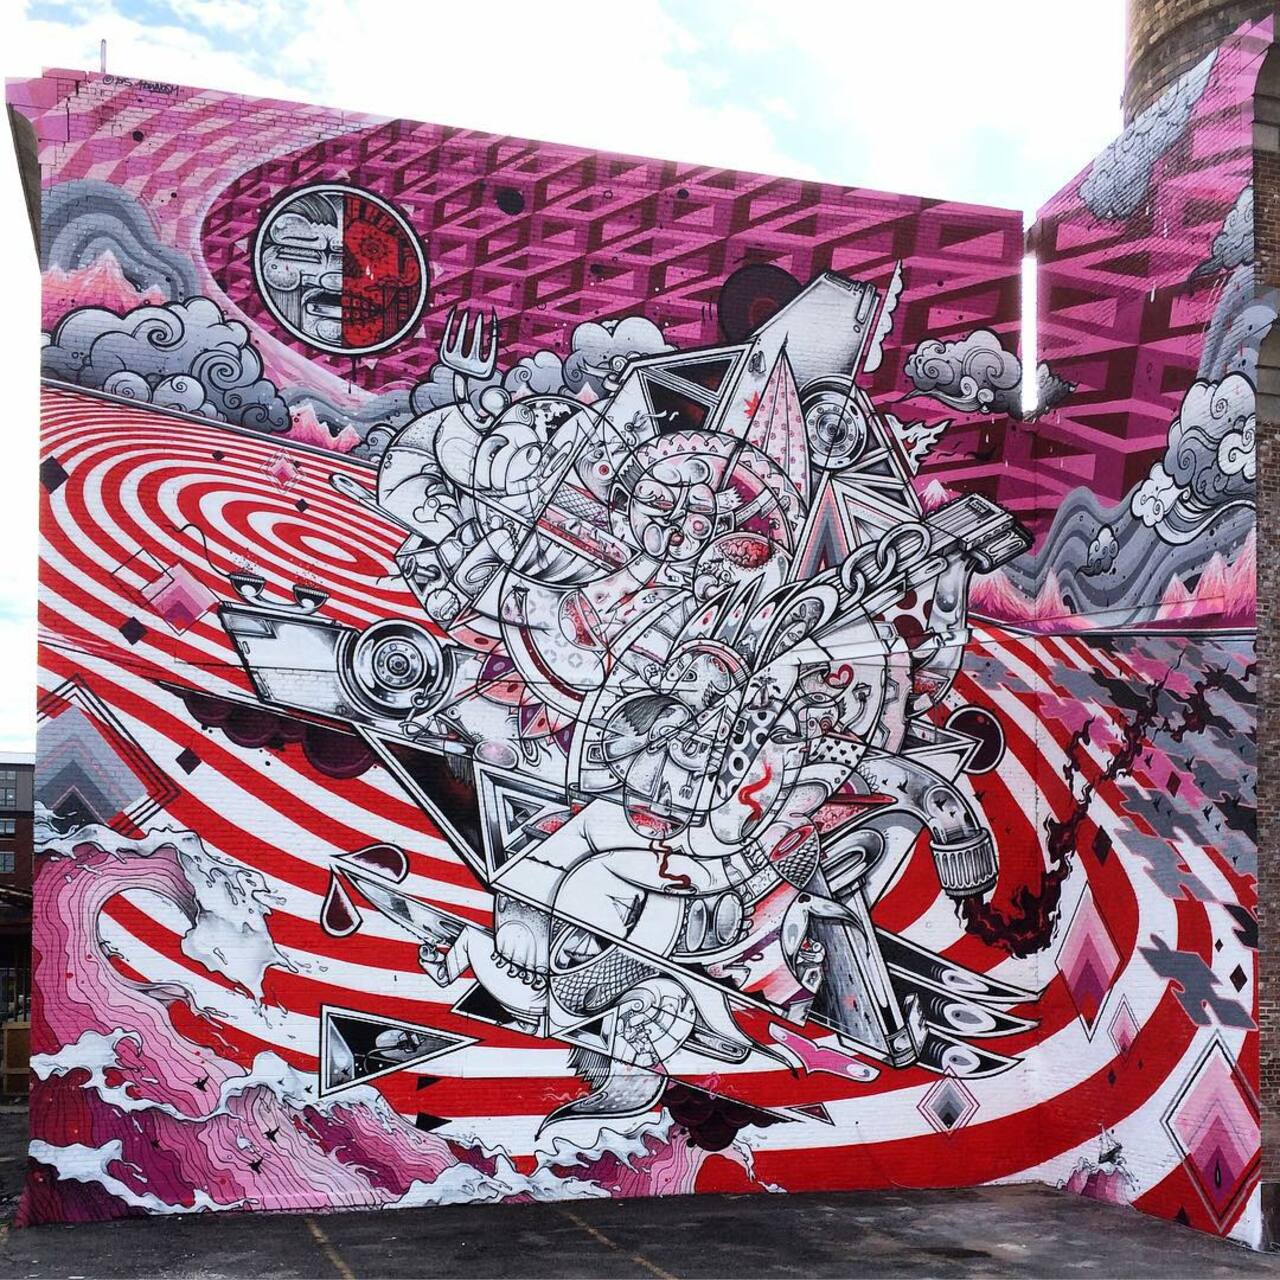 RT @thx2111: How & Nosm create a new mural in Jersey City, USA. #StreetArt #Graffiti #Mural http://t.co/iOAxXjzaN5